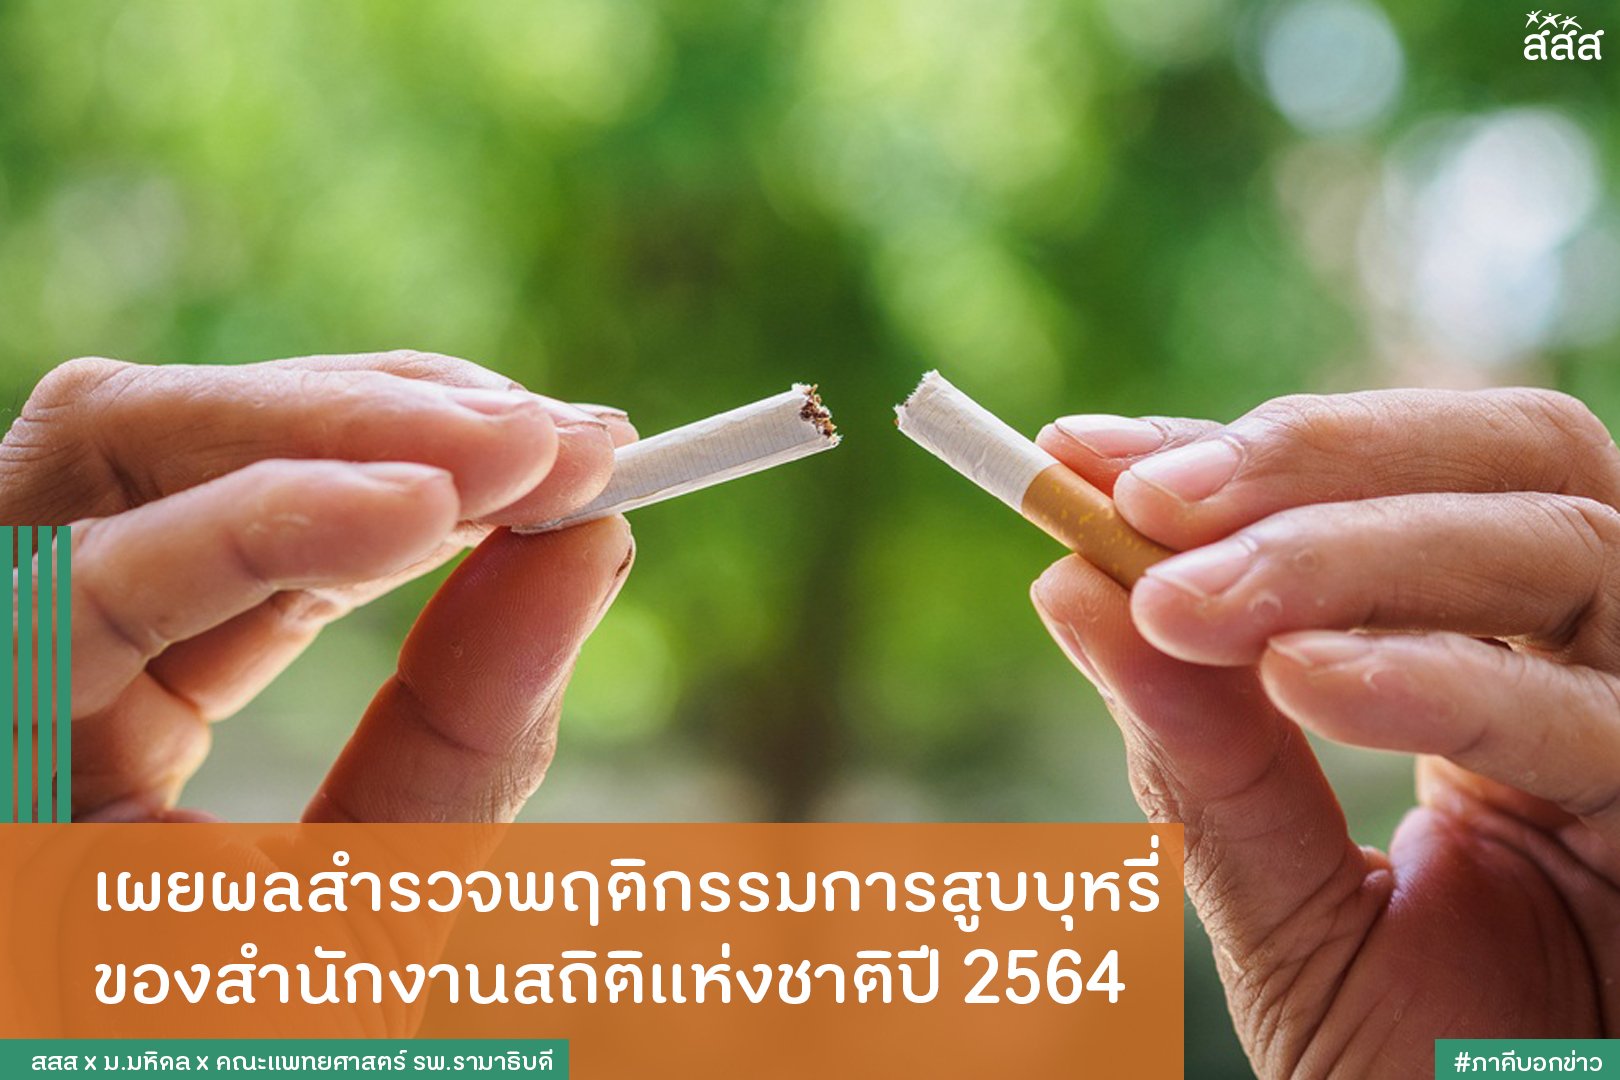 เผยผลสำรวจพฤติกรรมการสูบบุหรี่ของสำนักงานสถิติแห่งชาติปี 2564  thaihealth